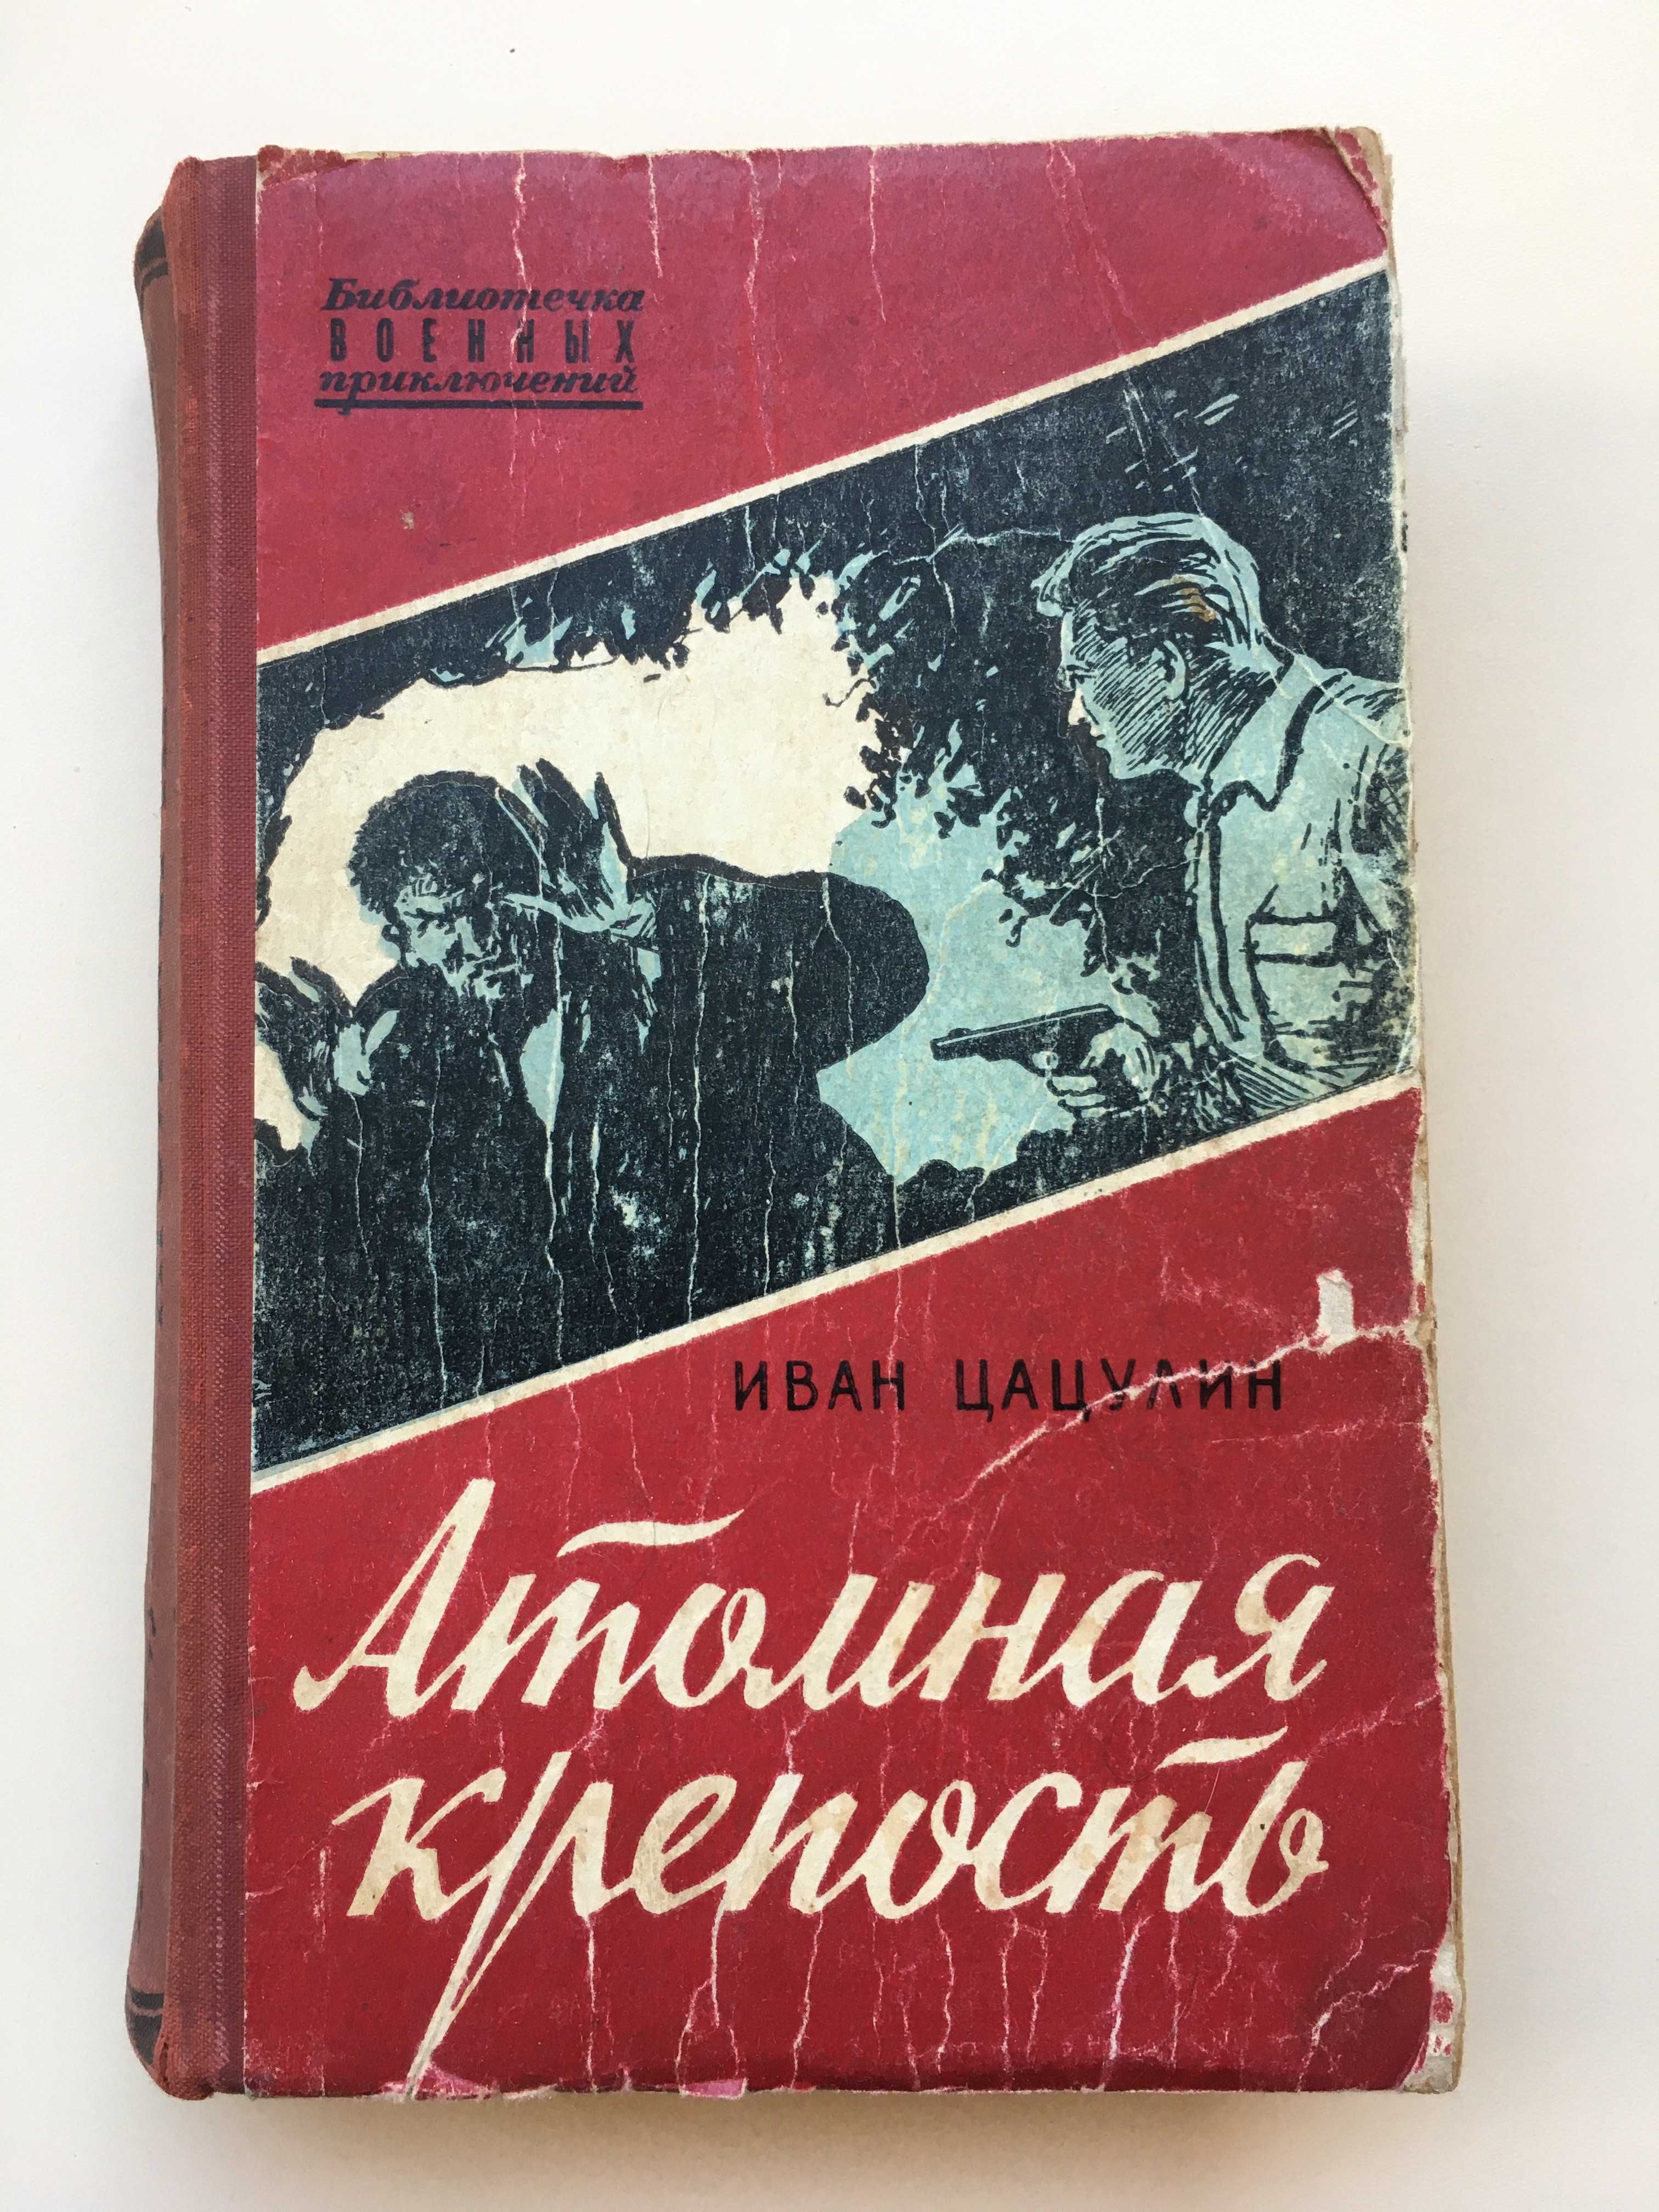 Книга роман "Атомная крепость" Иван Цацулин 1958 год издания